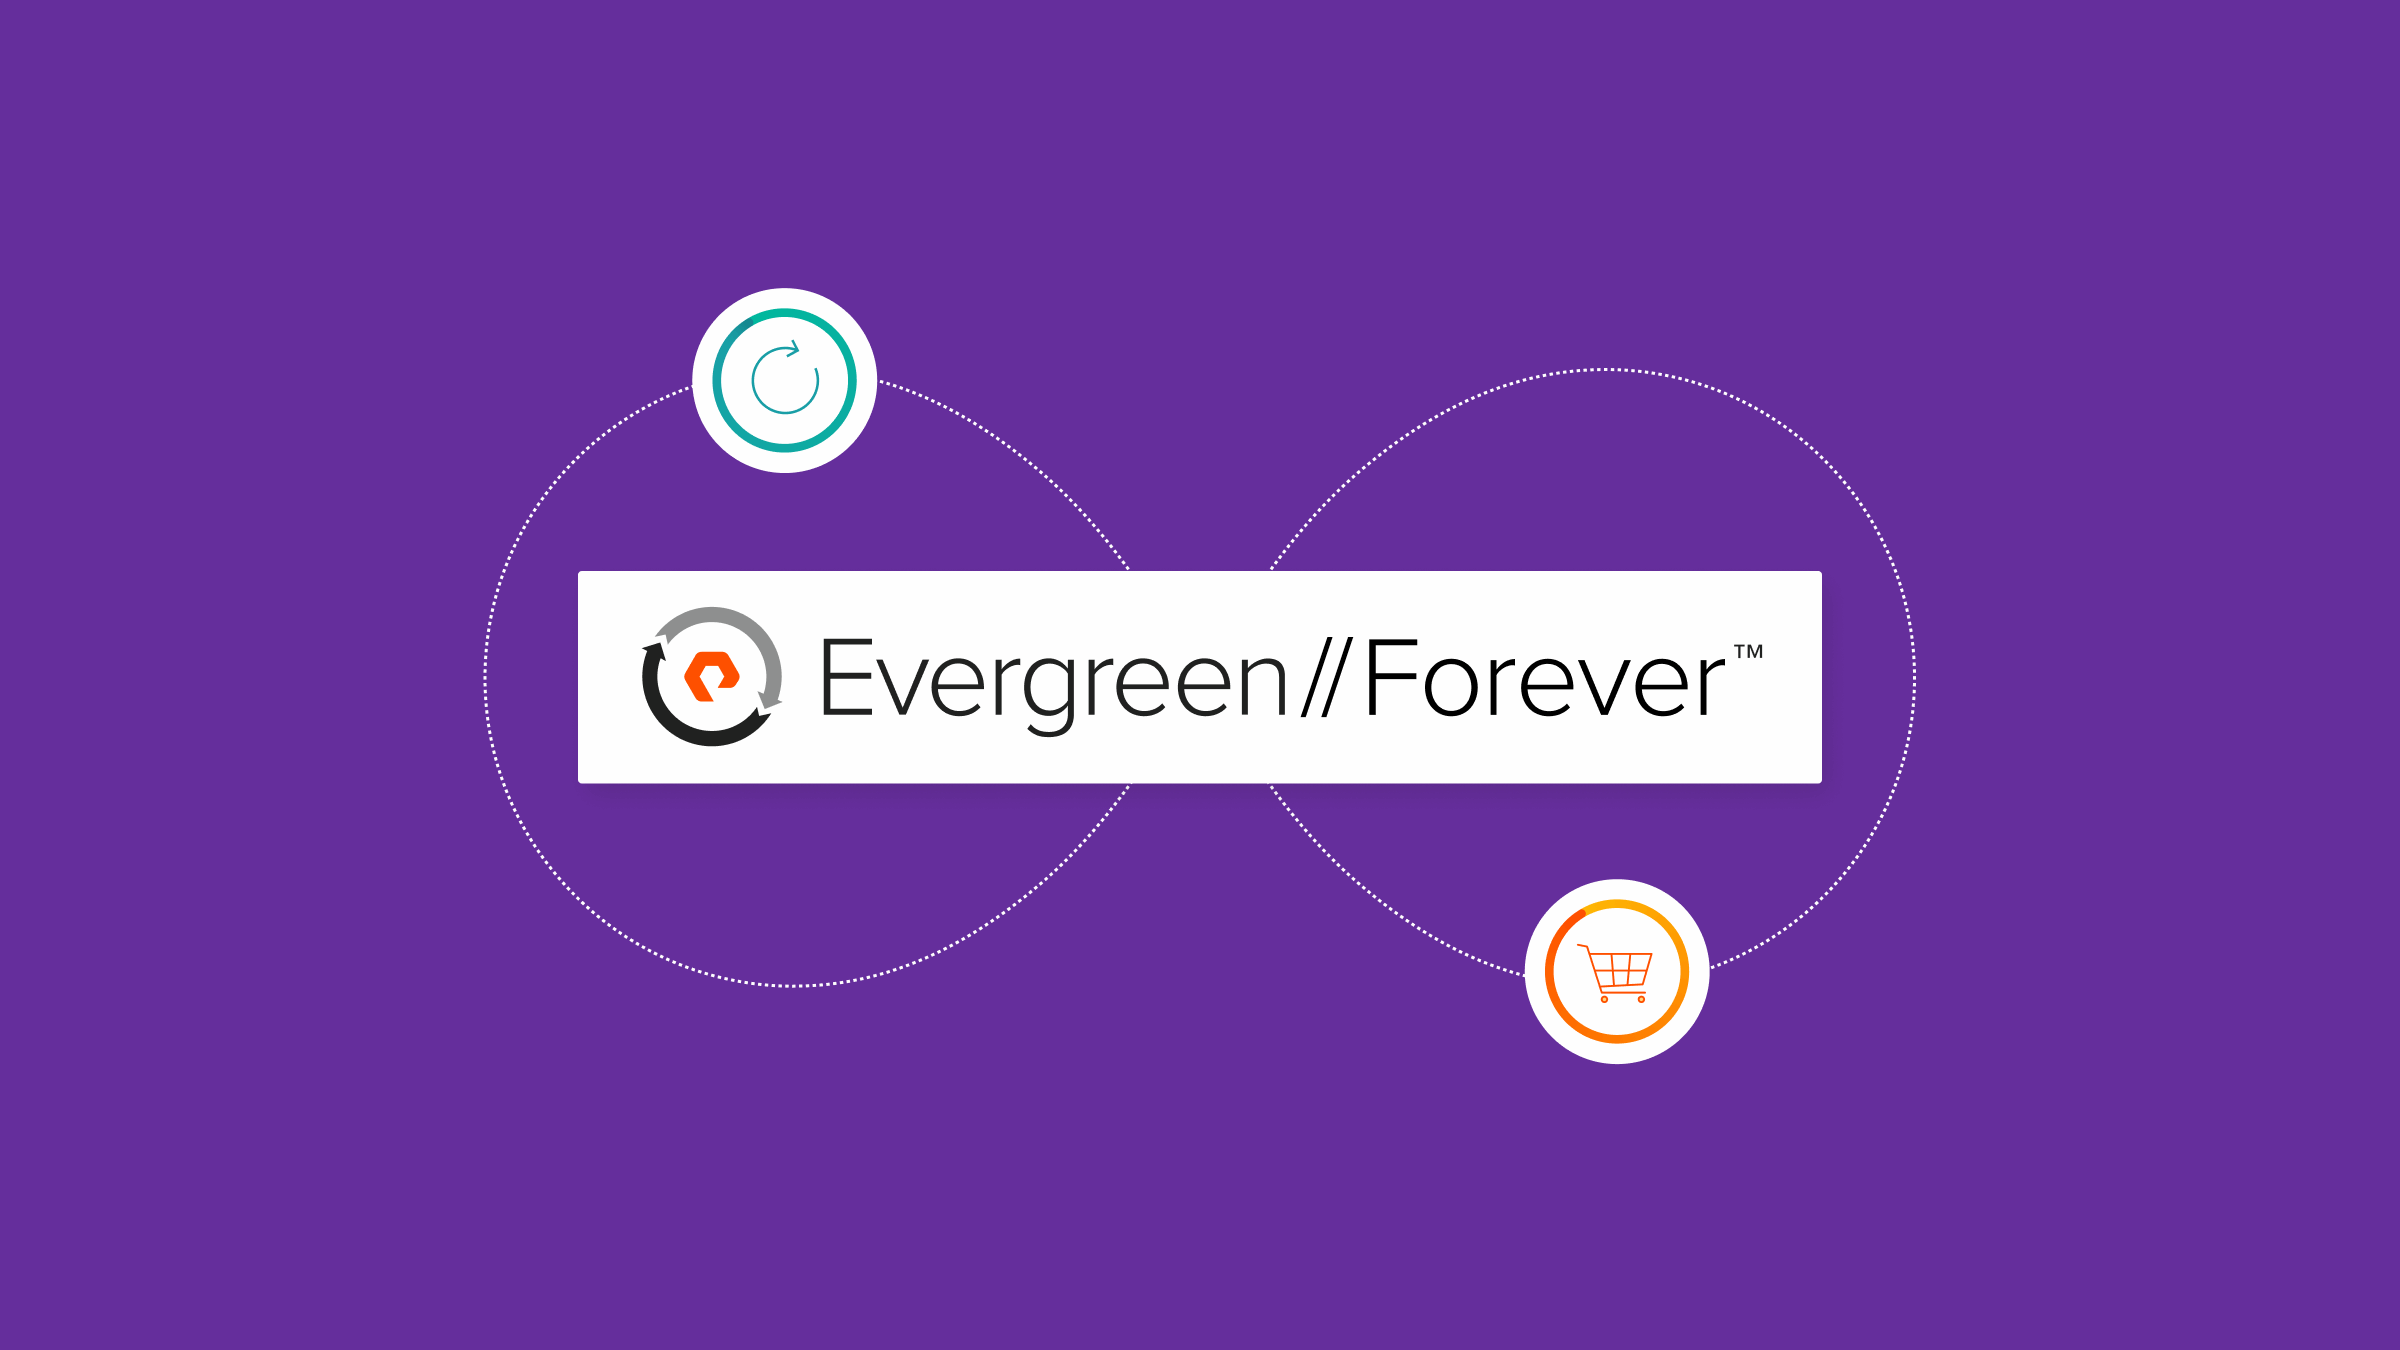 Evergreen//Forever: assinatura para inovação